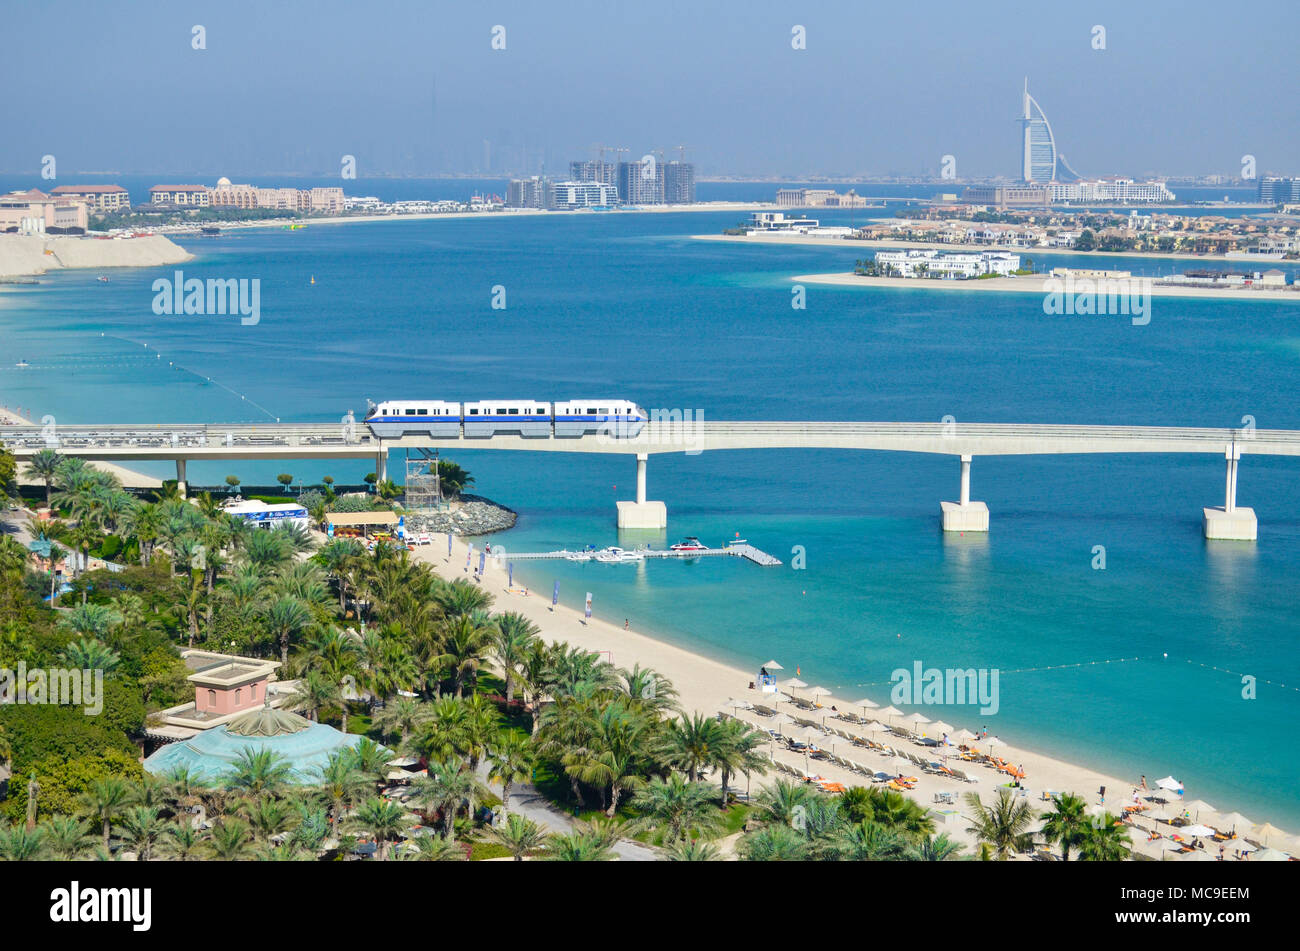 The view from Atlantis the Plam, Palm Jumeirah, Dubai, UAE. Stock Photo